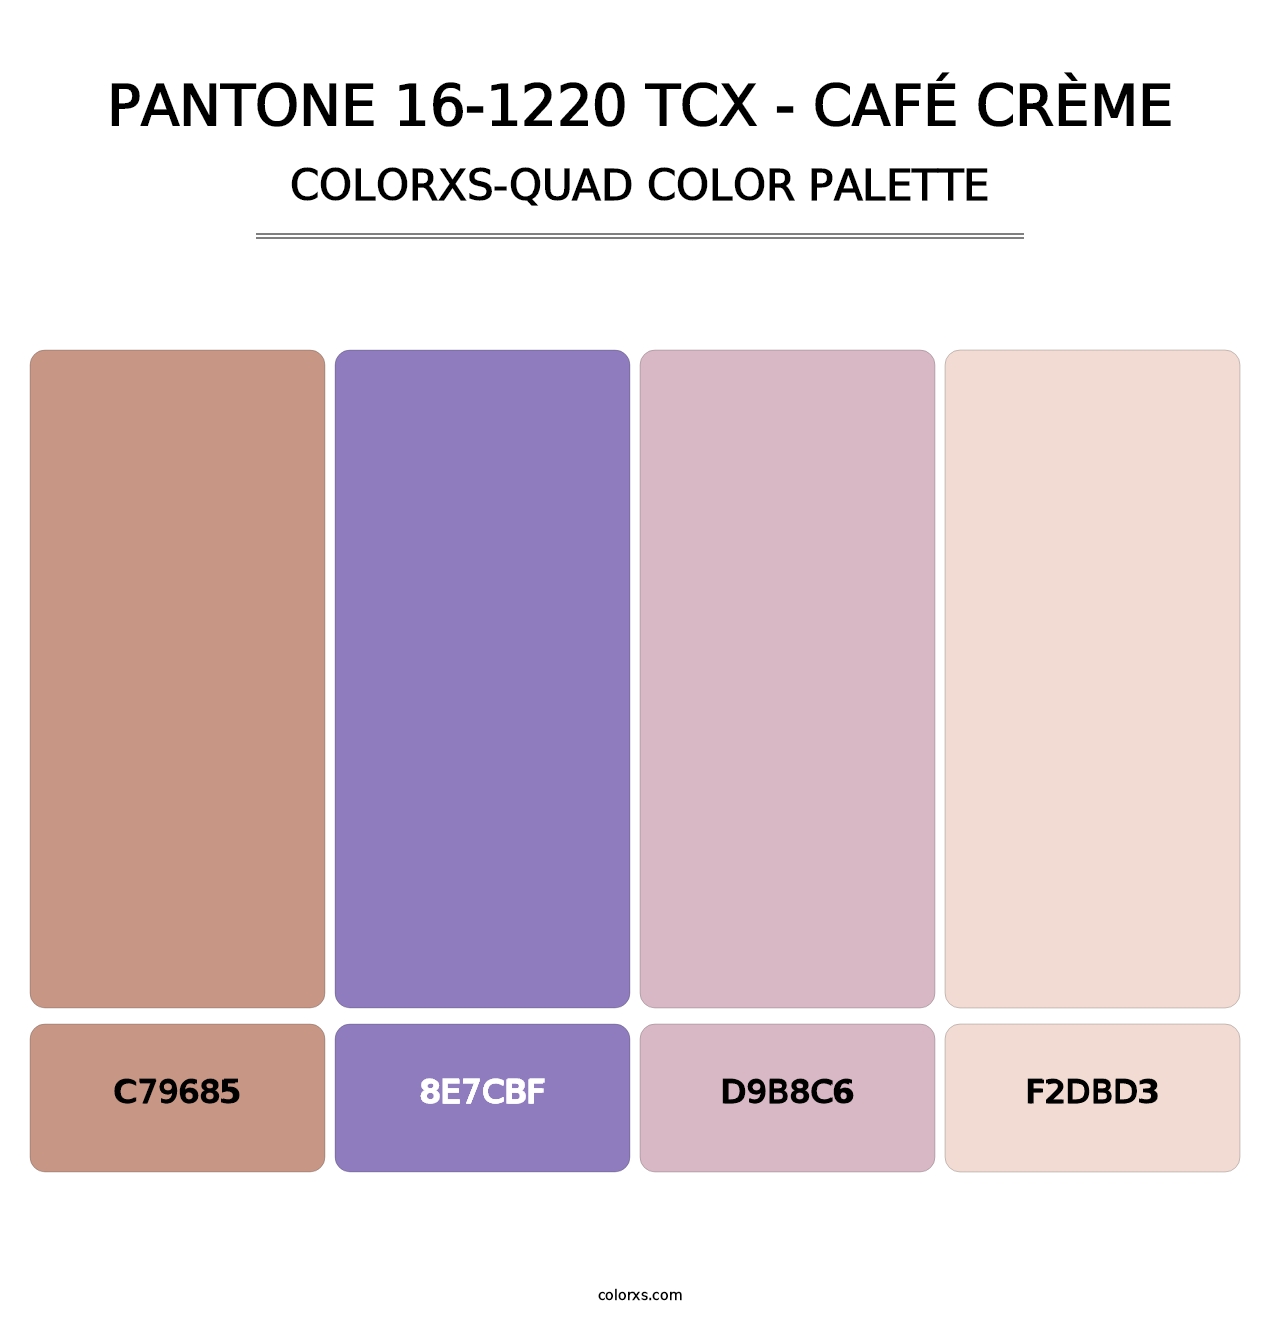 PANTONE 16-1220 TCX - Café Crème - Colorxs Quad Palette